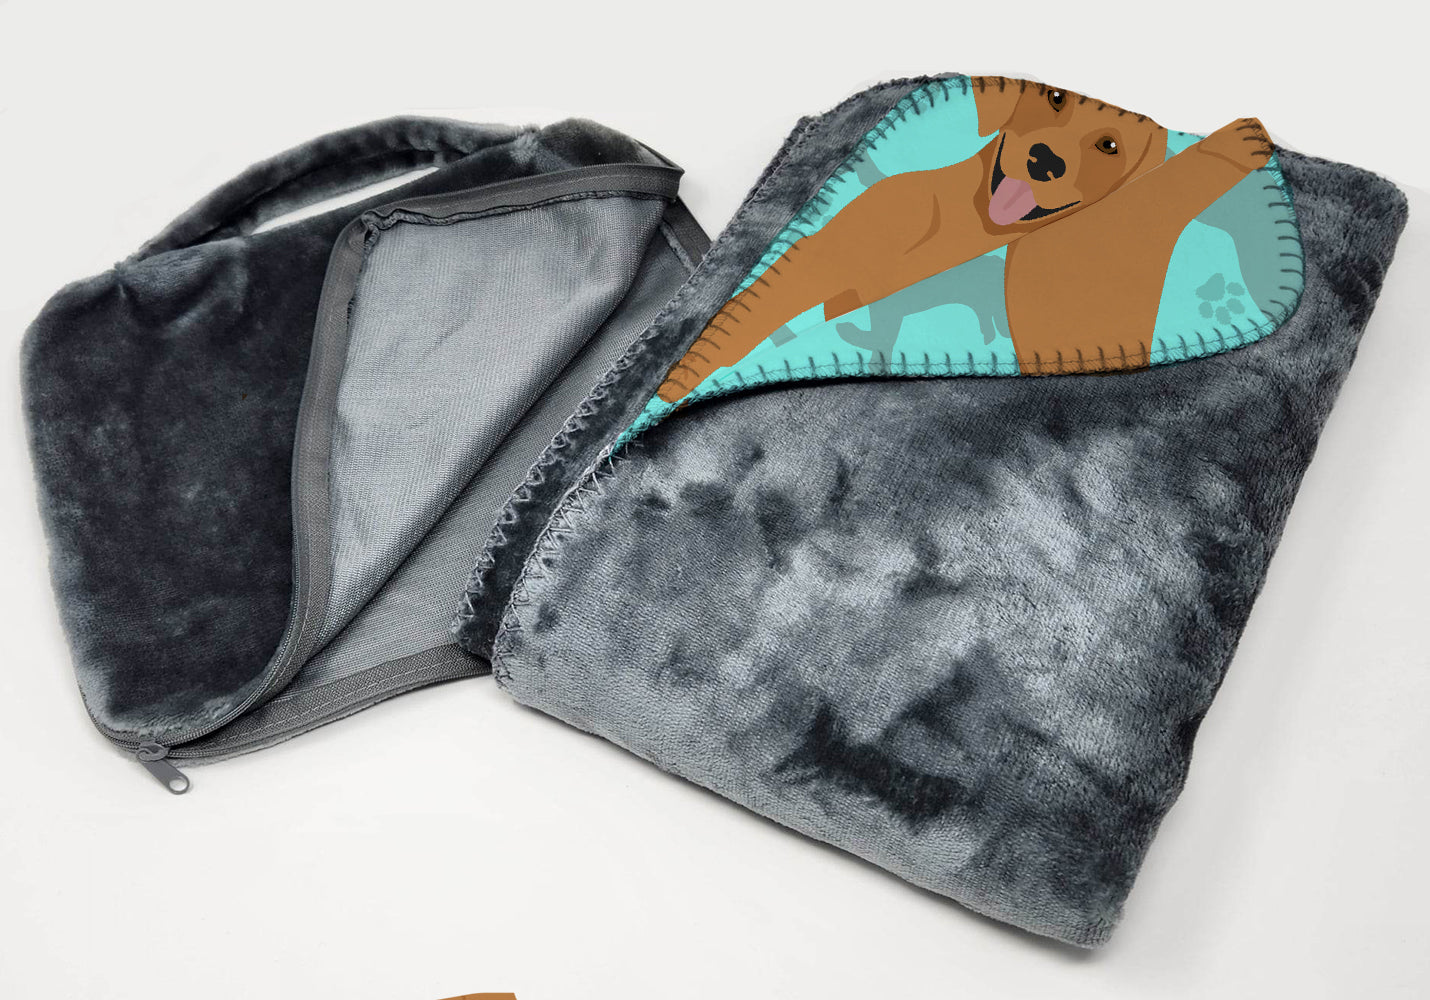 Red Fox Labrador Retriever Soft Travel Blanket with Bag - the-store.com